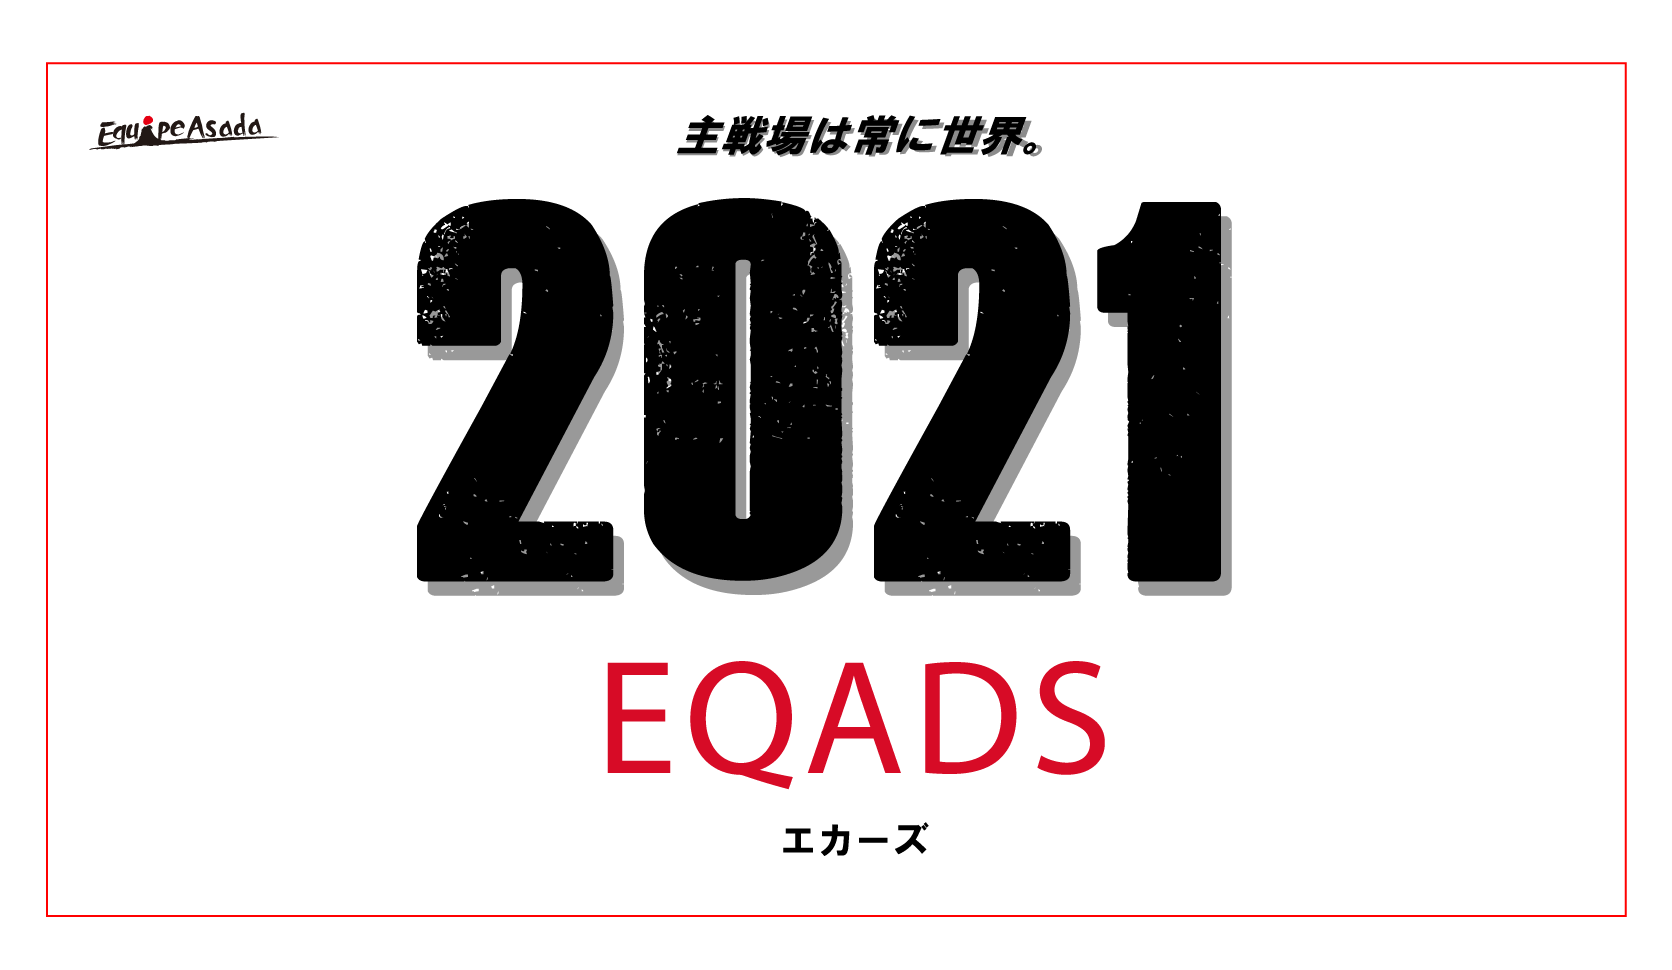 Eqads 21体制のお知らせ Eqads